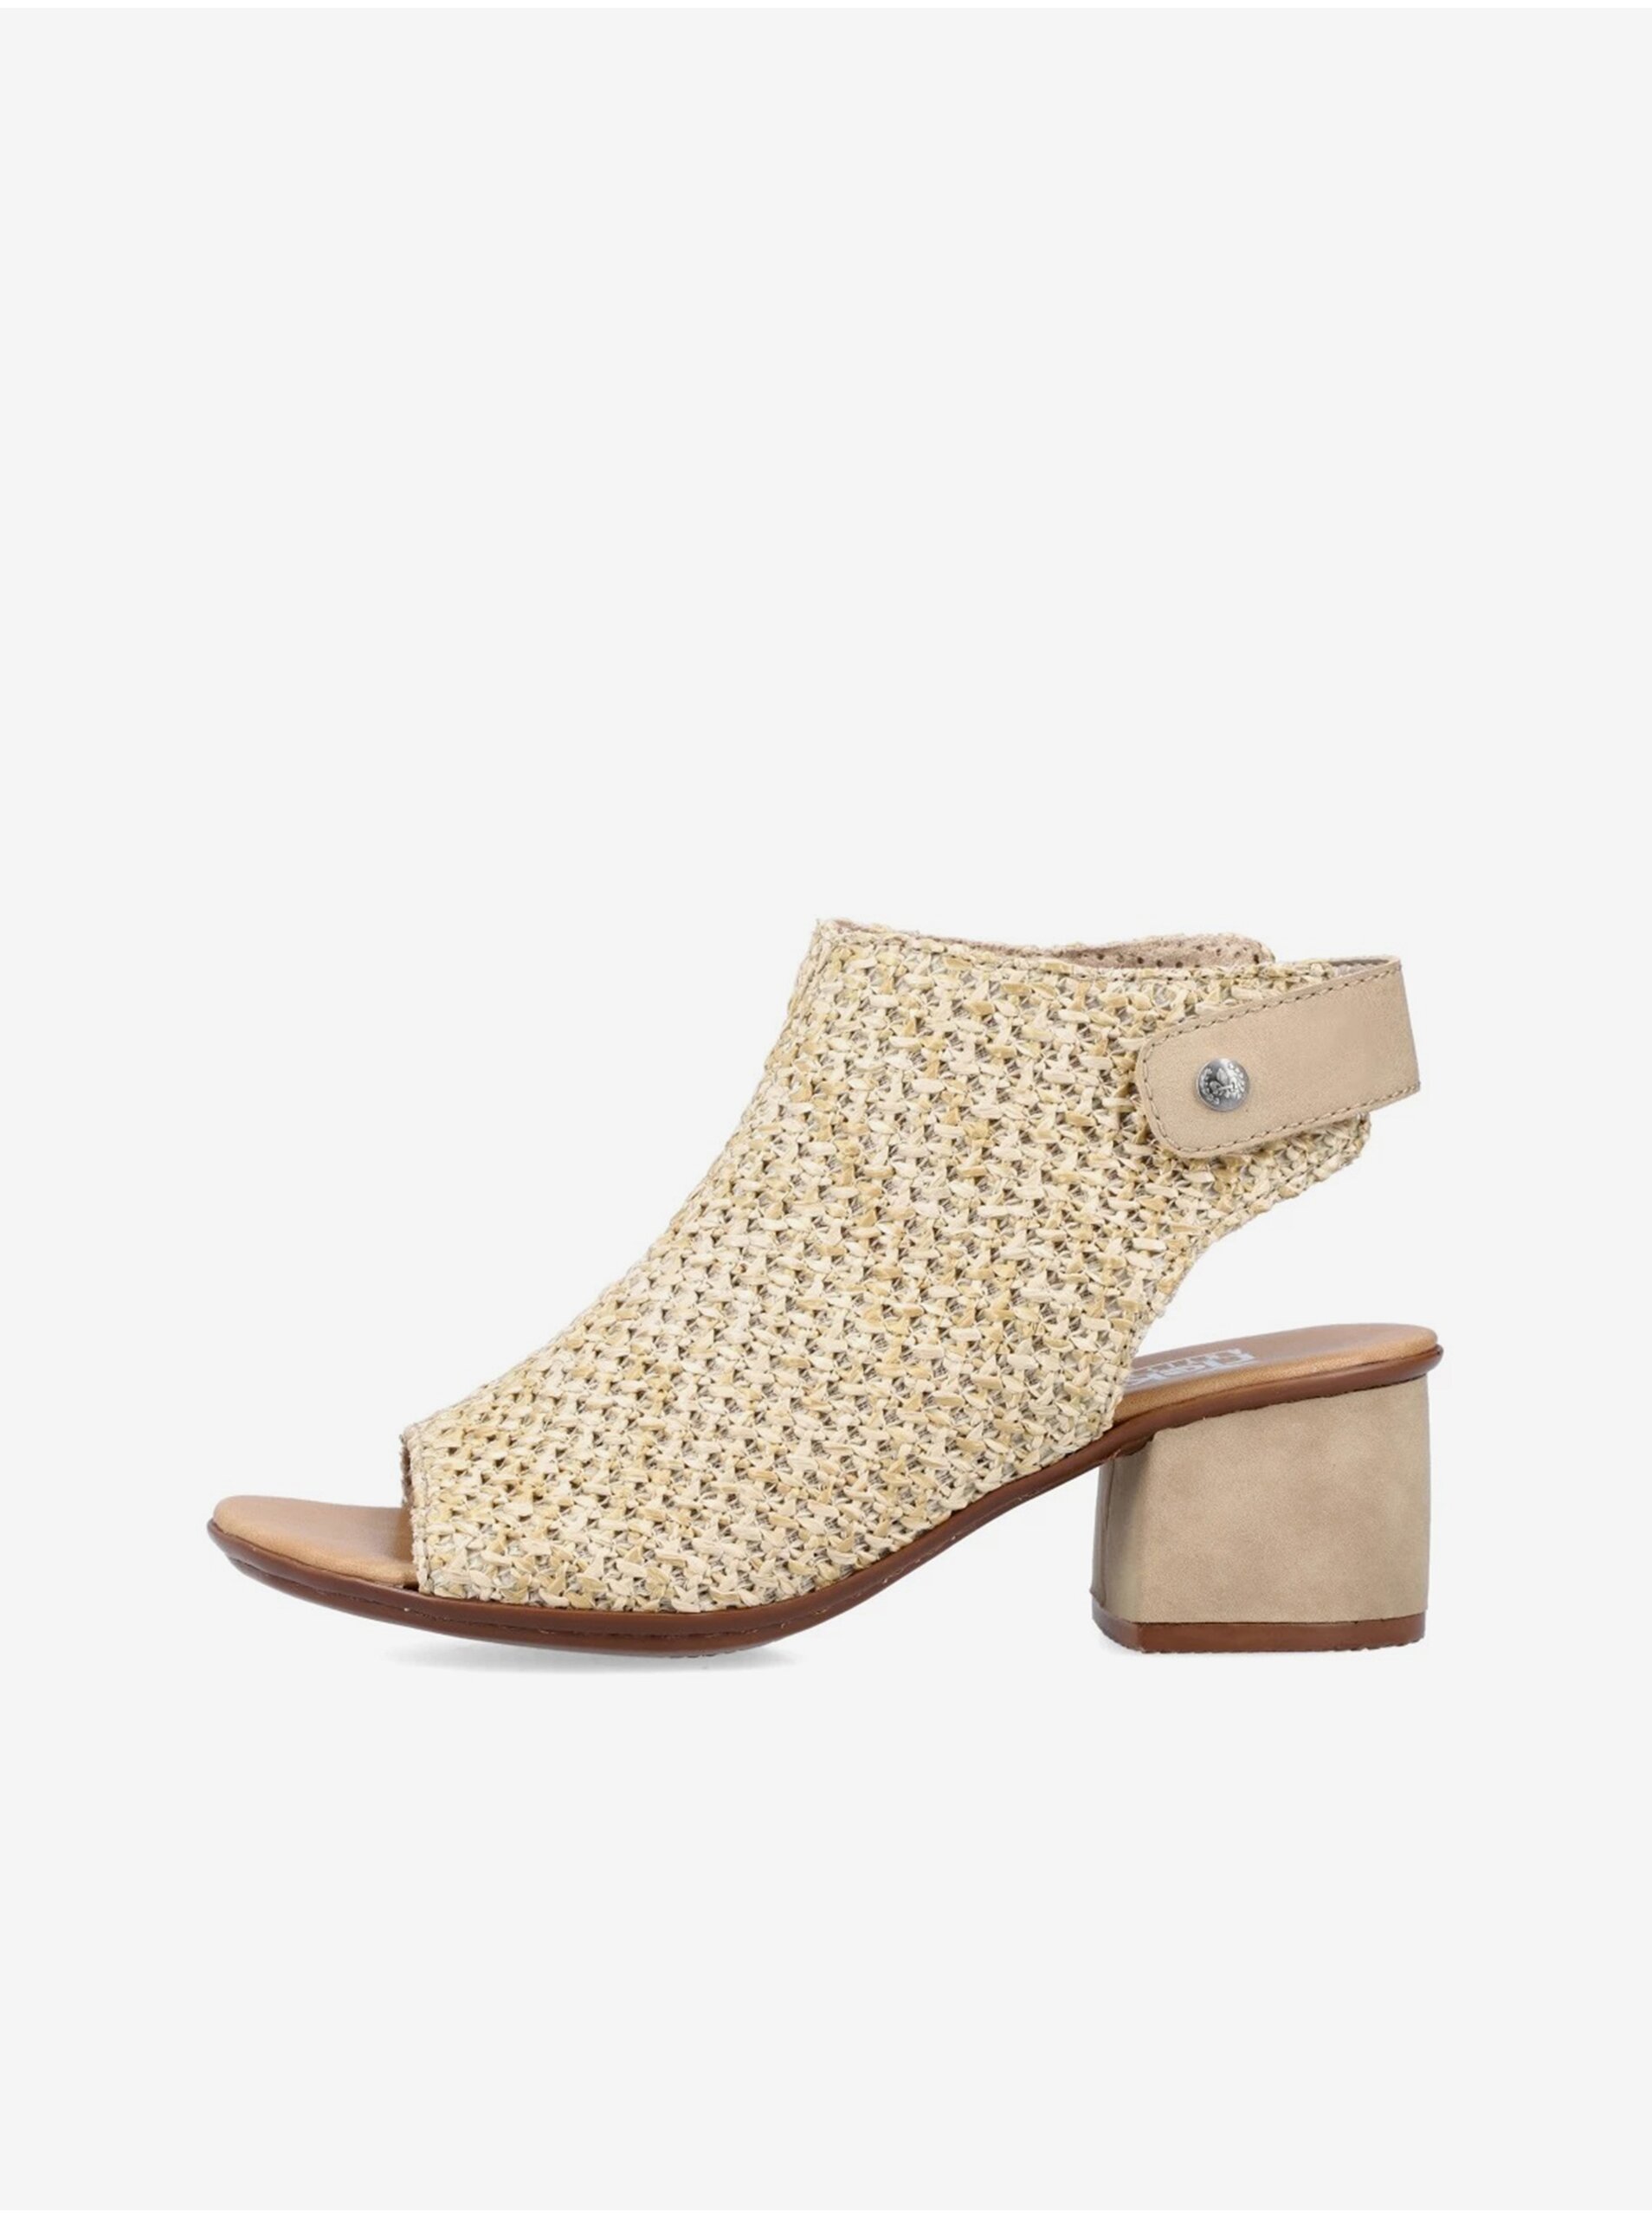 E-shop Béžové dámske sandálky na podpätku Rieker